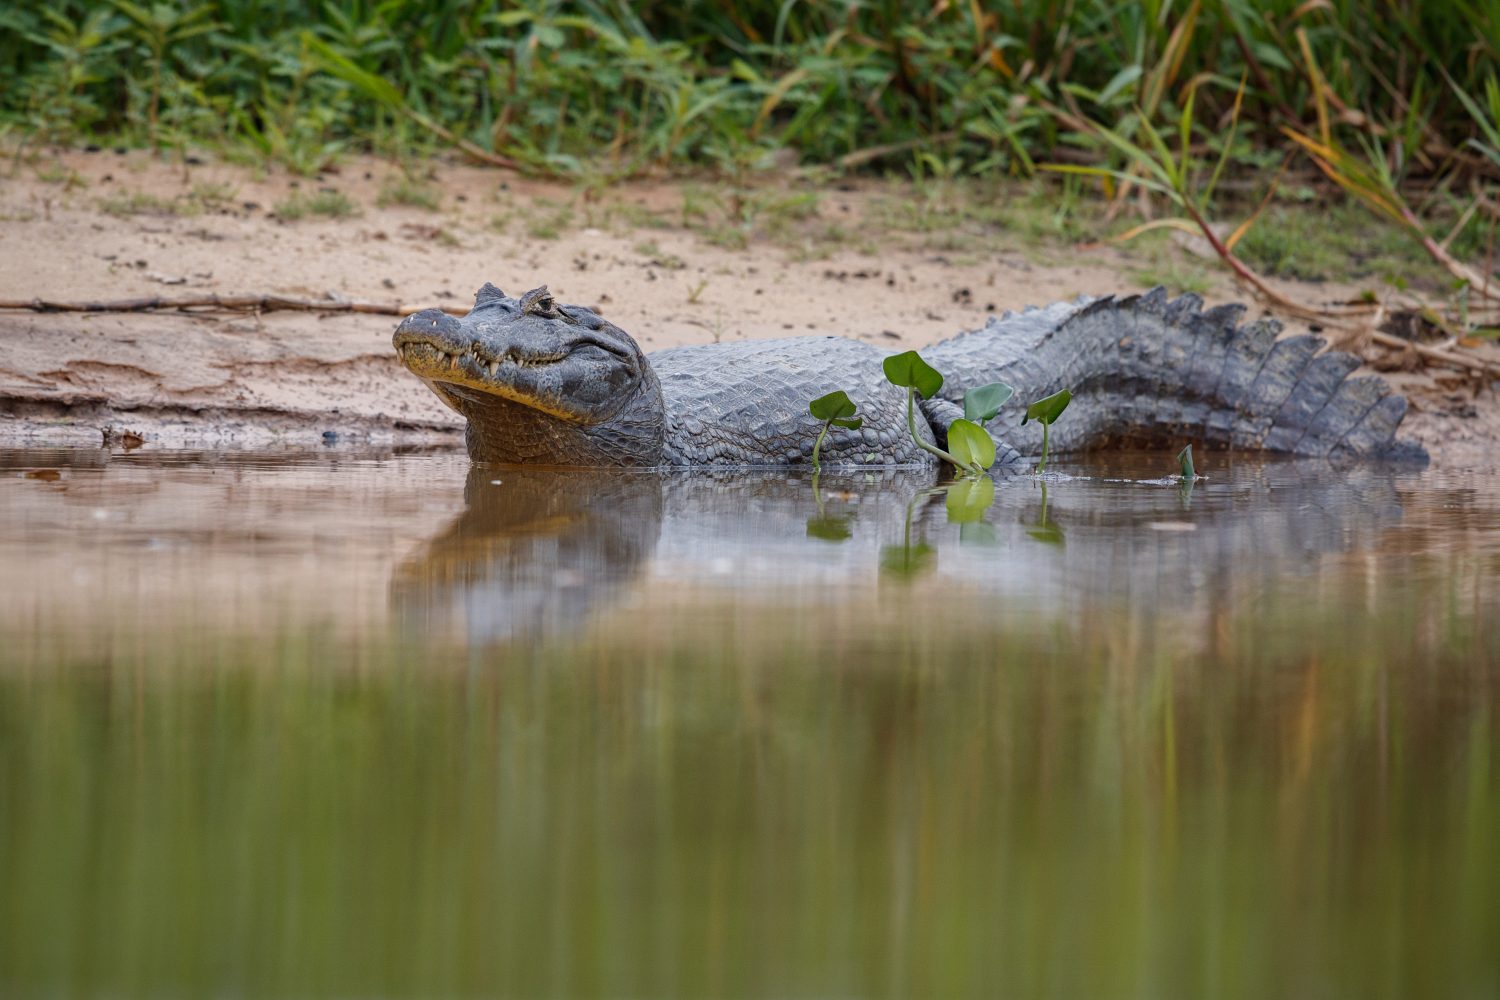 Cocodrilo se devoró a menor | perro caimán | caimanes de un lago | en la boca de un caimán